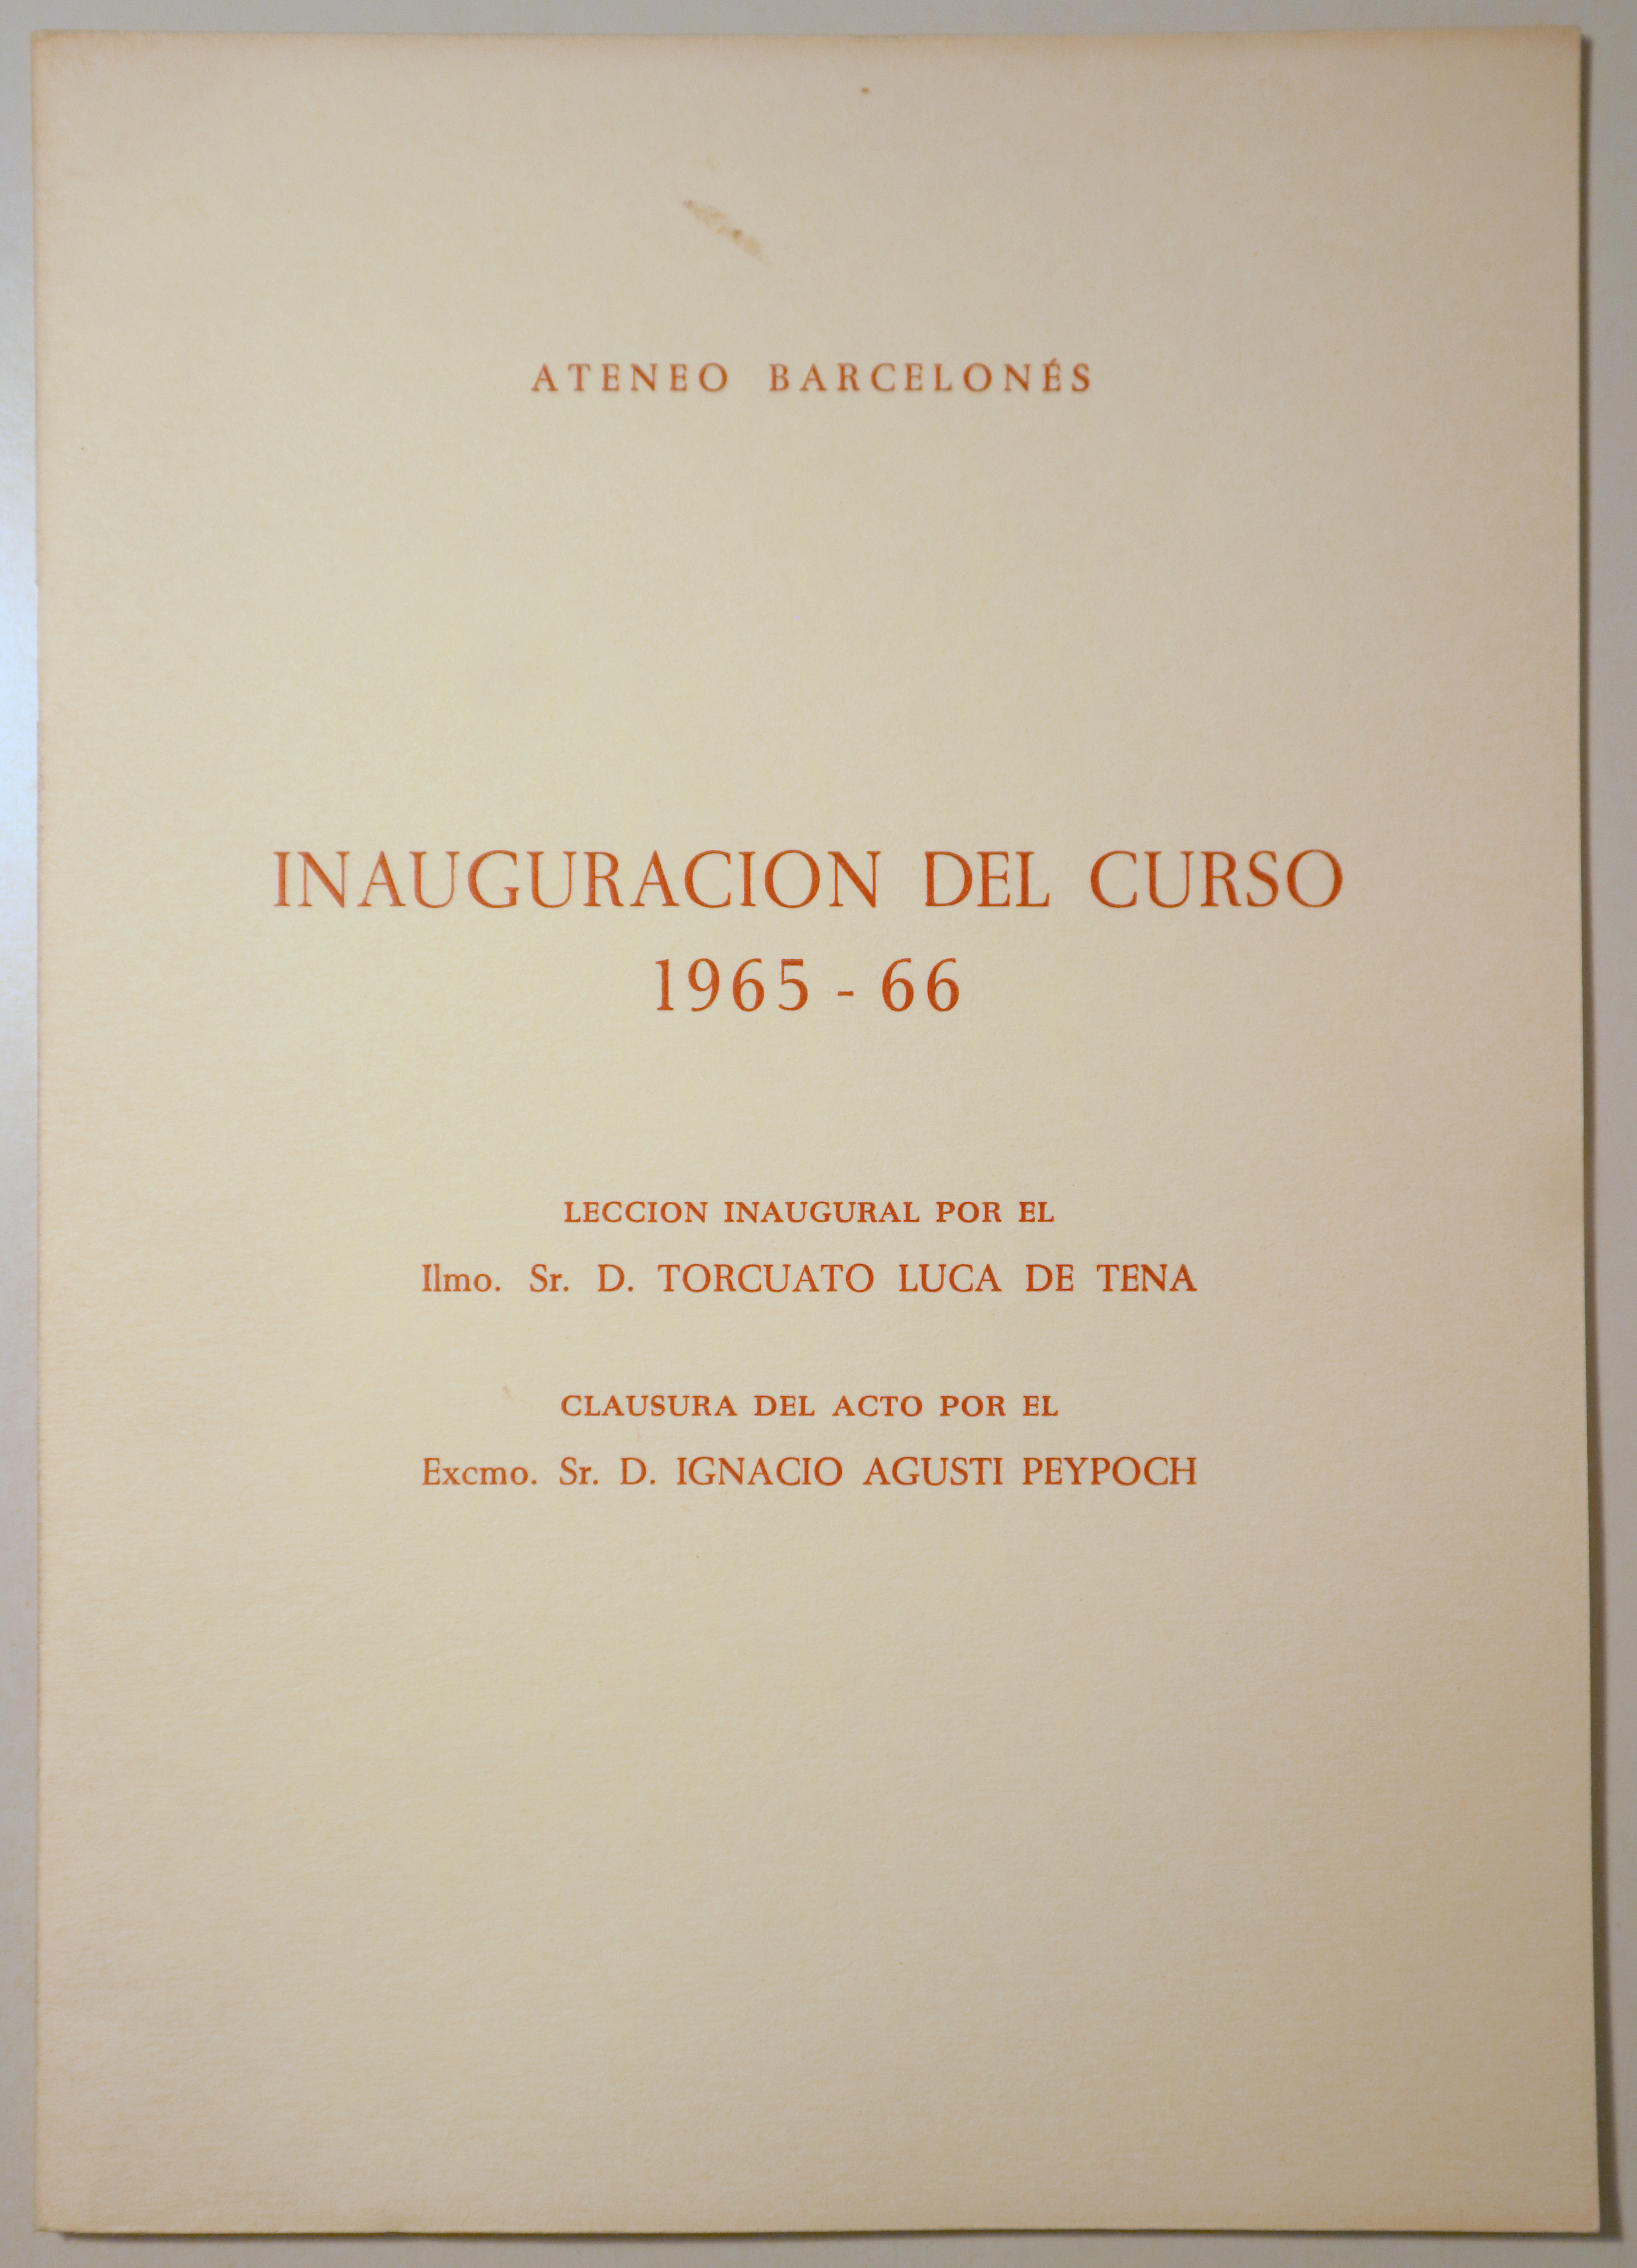 ATENEO BARCELONÉS. INAUGURACIÓN DEL CURSO 1965-66 - Barcelona 1966